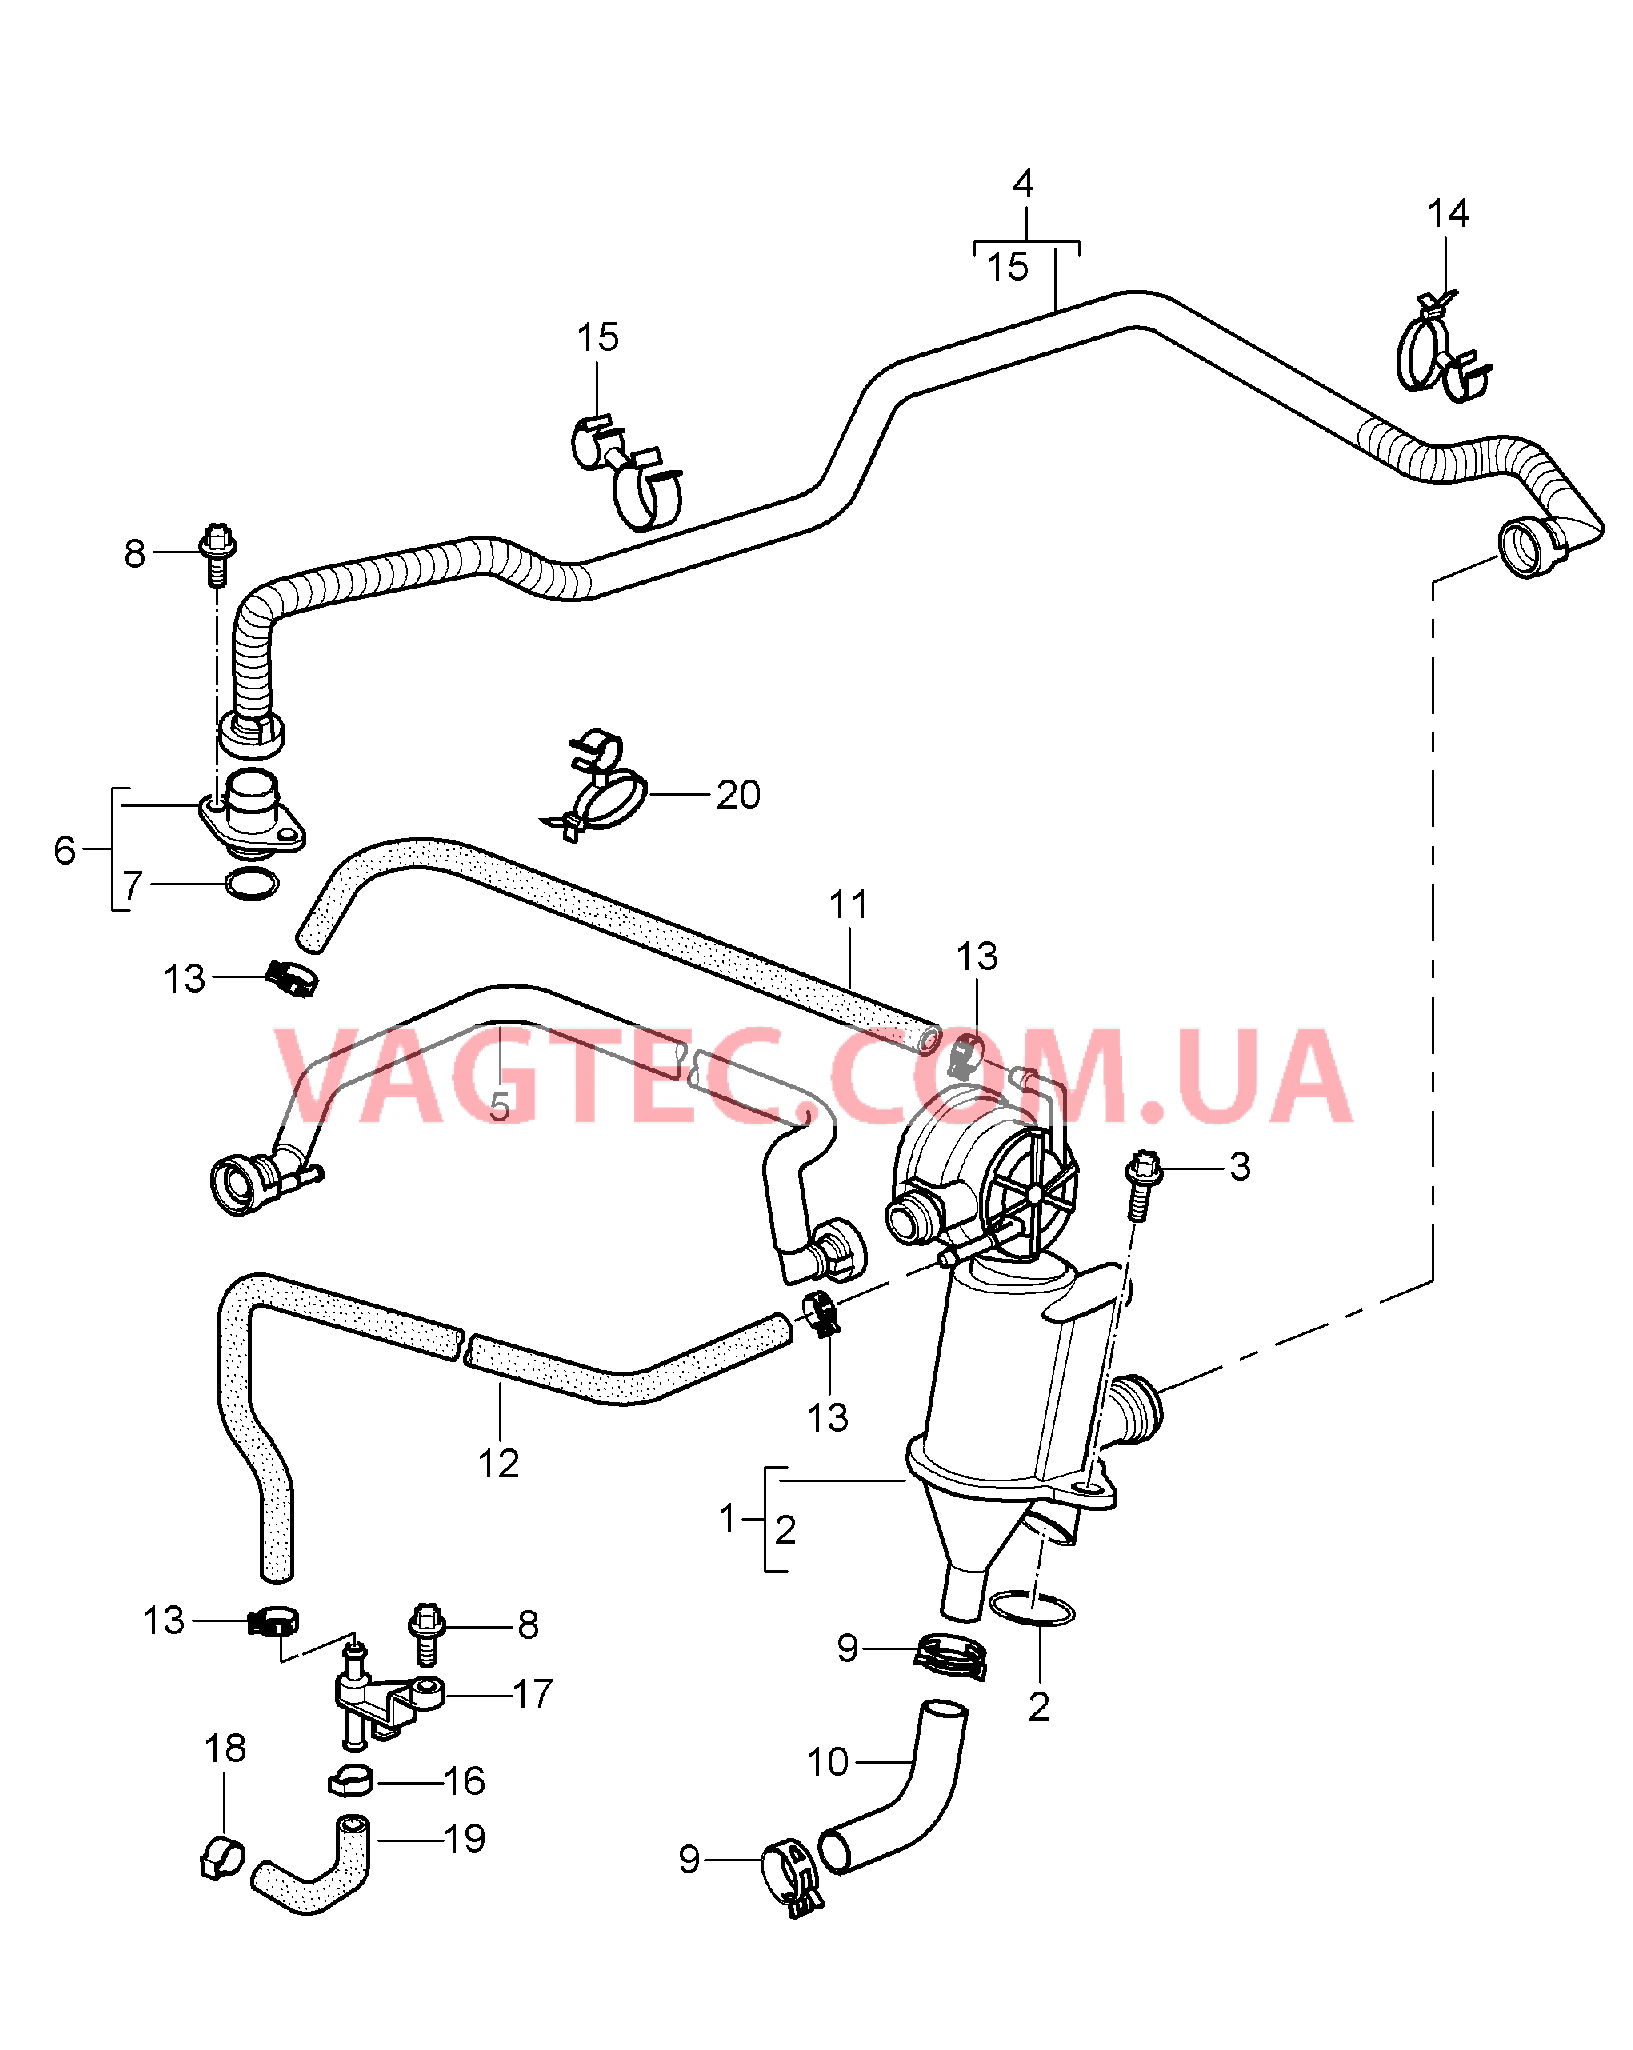 104-010 Кривошипный механизм, Система вентиляции
						
						M96.05 для PORSCHE 911.Carrera 2005-2008